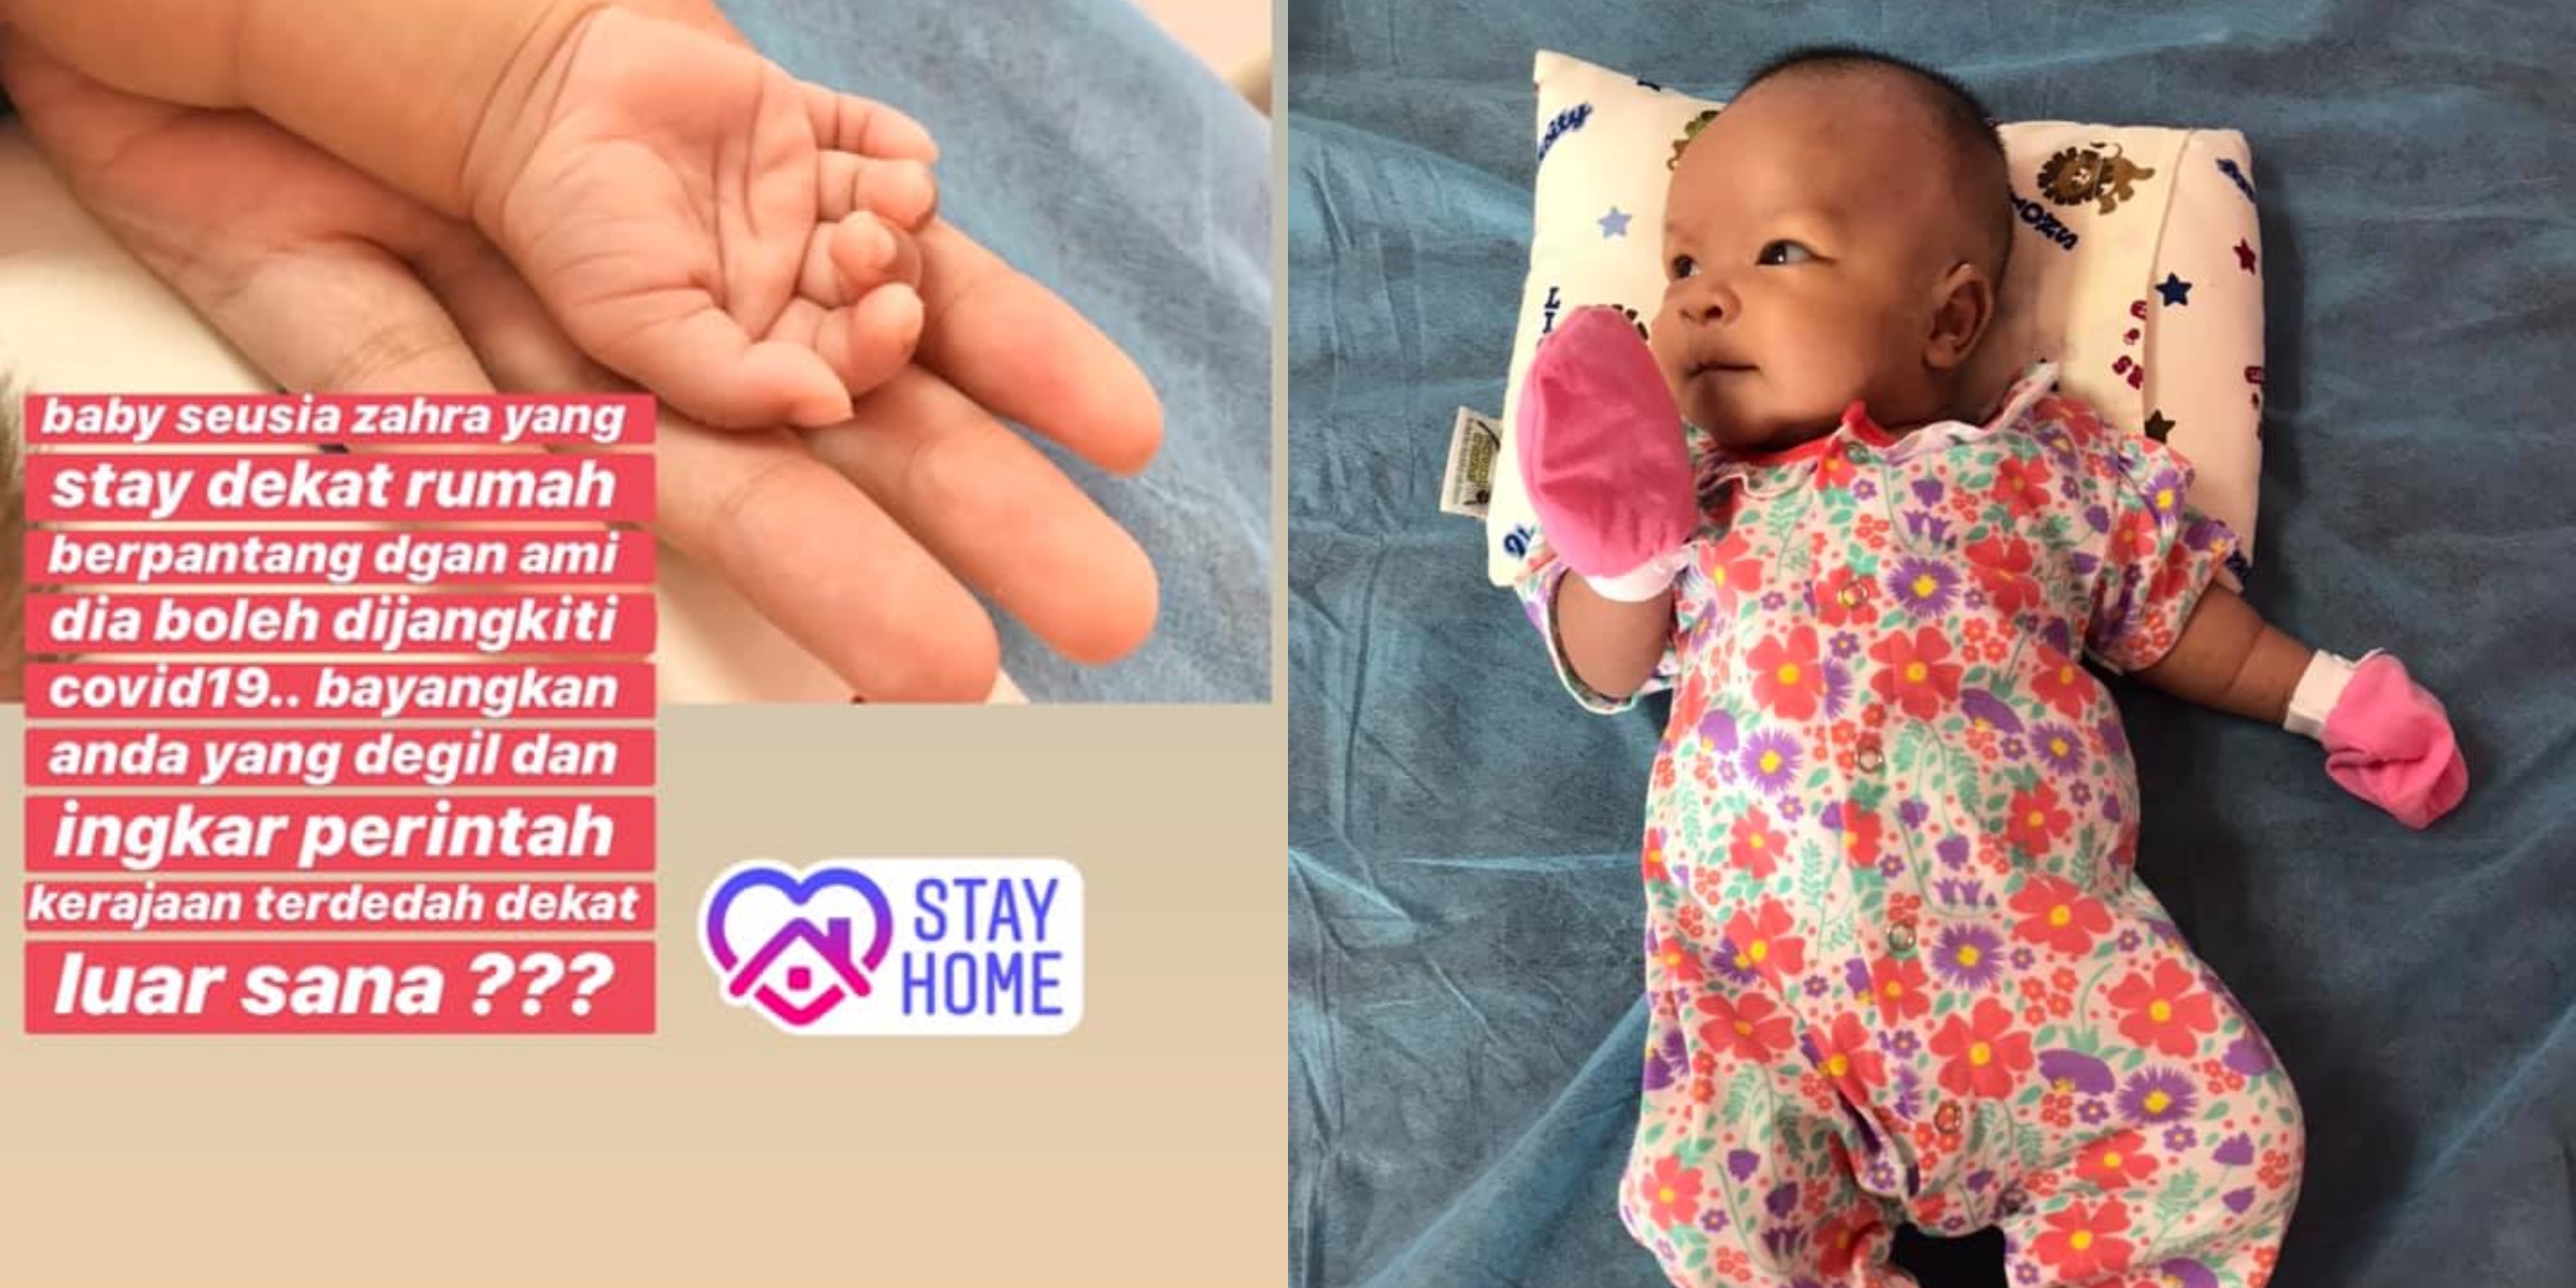 ‘Stay Dekat Rumah Berpantang Boleh Dijangkiti..’ – Bayi Usia Sebulan Positif Covid-19